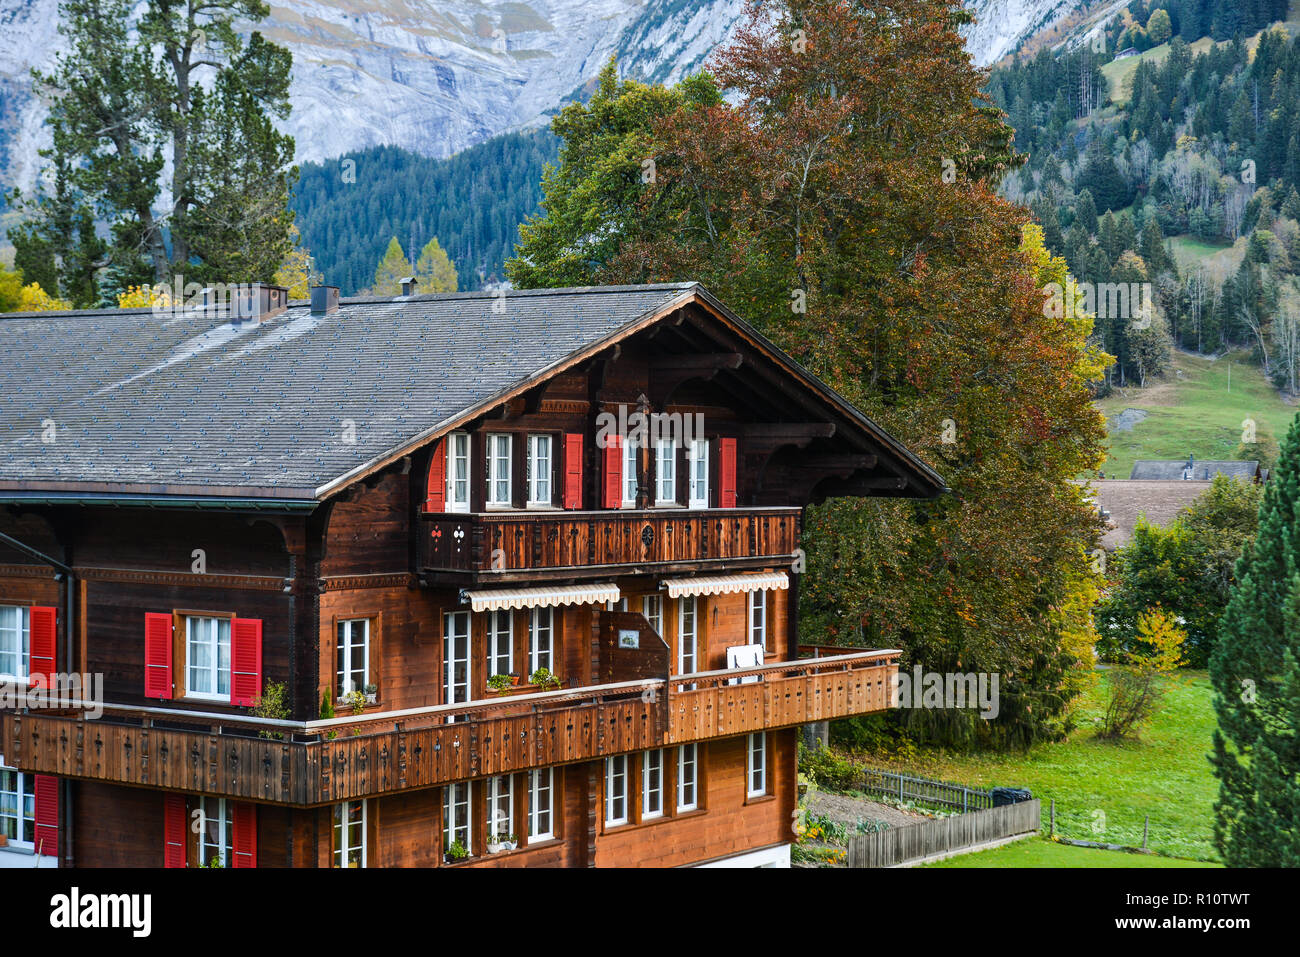 Holz- Haus in Bergdorf in Grindelwald, Schweiz. Grindelwald war einer der  ersten Fremdenverkehrsorte in der Schweiz und in Europa Stockfotografie -  Alamy